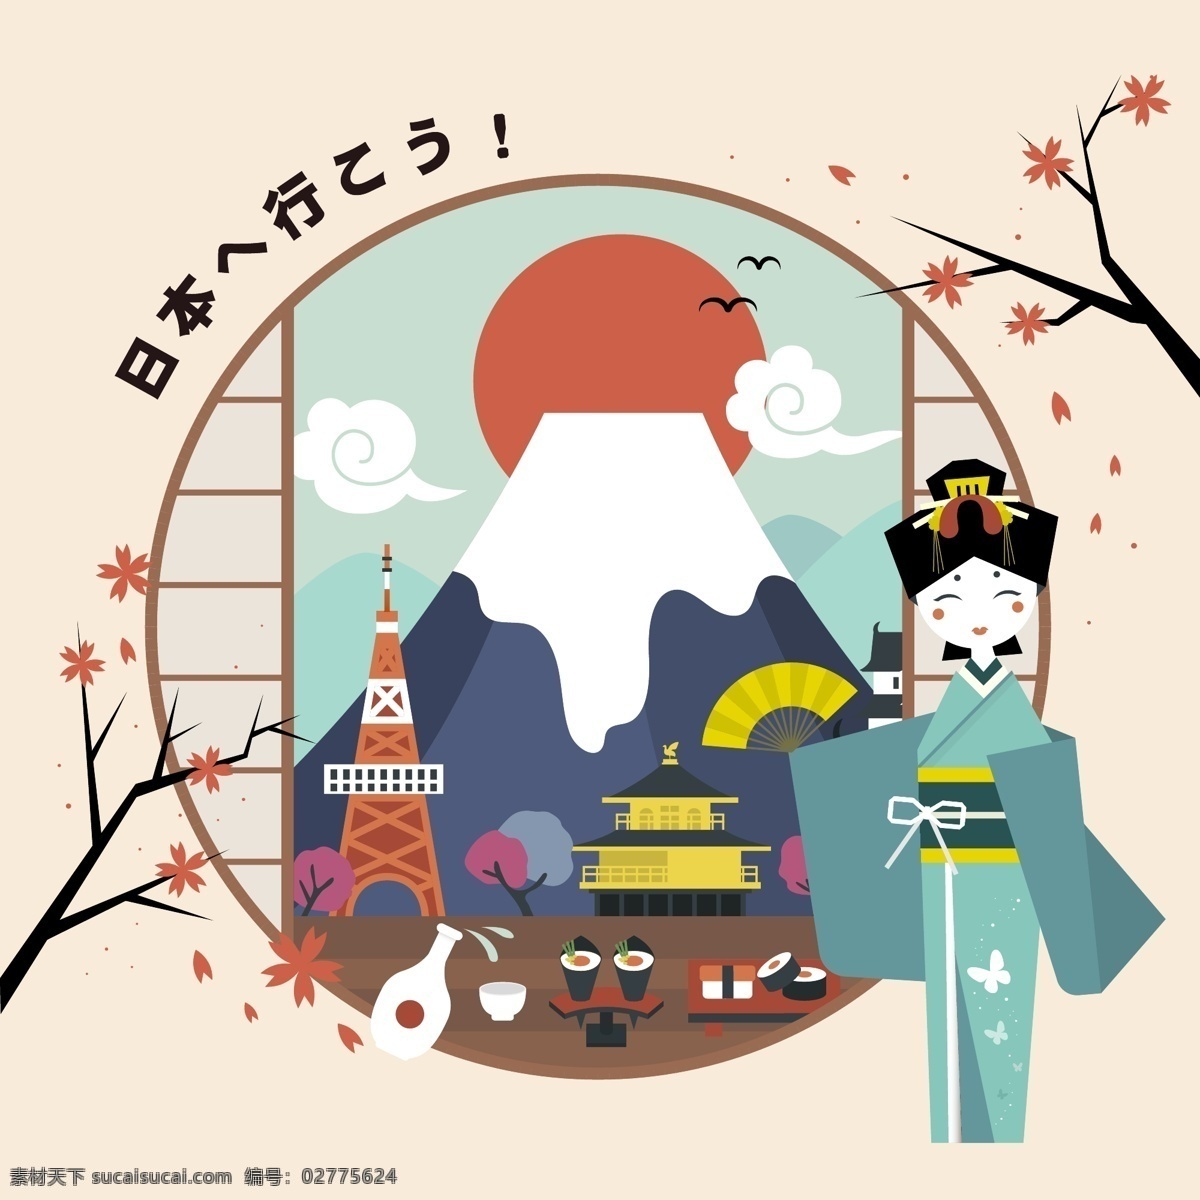 创意 日本 旅行 插画 建筑 人物 富士山